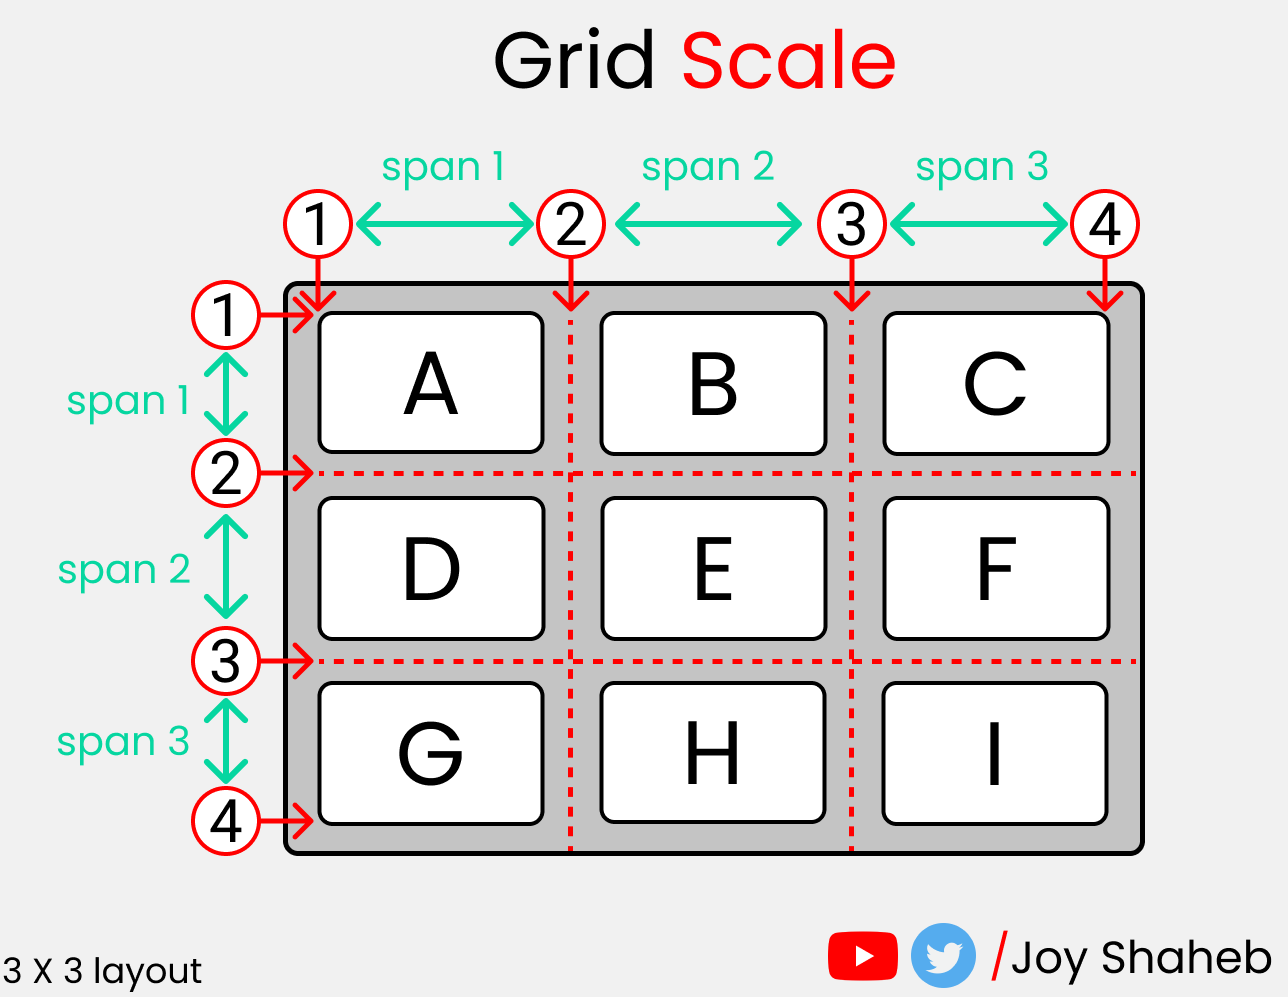 Полный самоучитель по CSS Grid со шпаргалкой 25